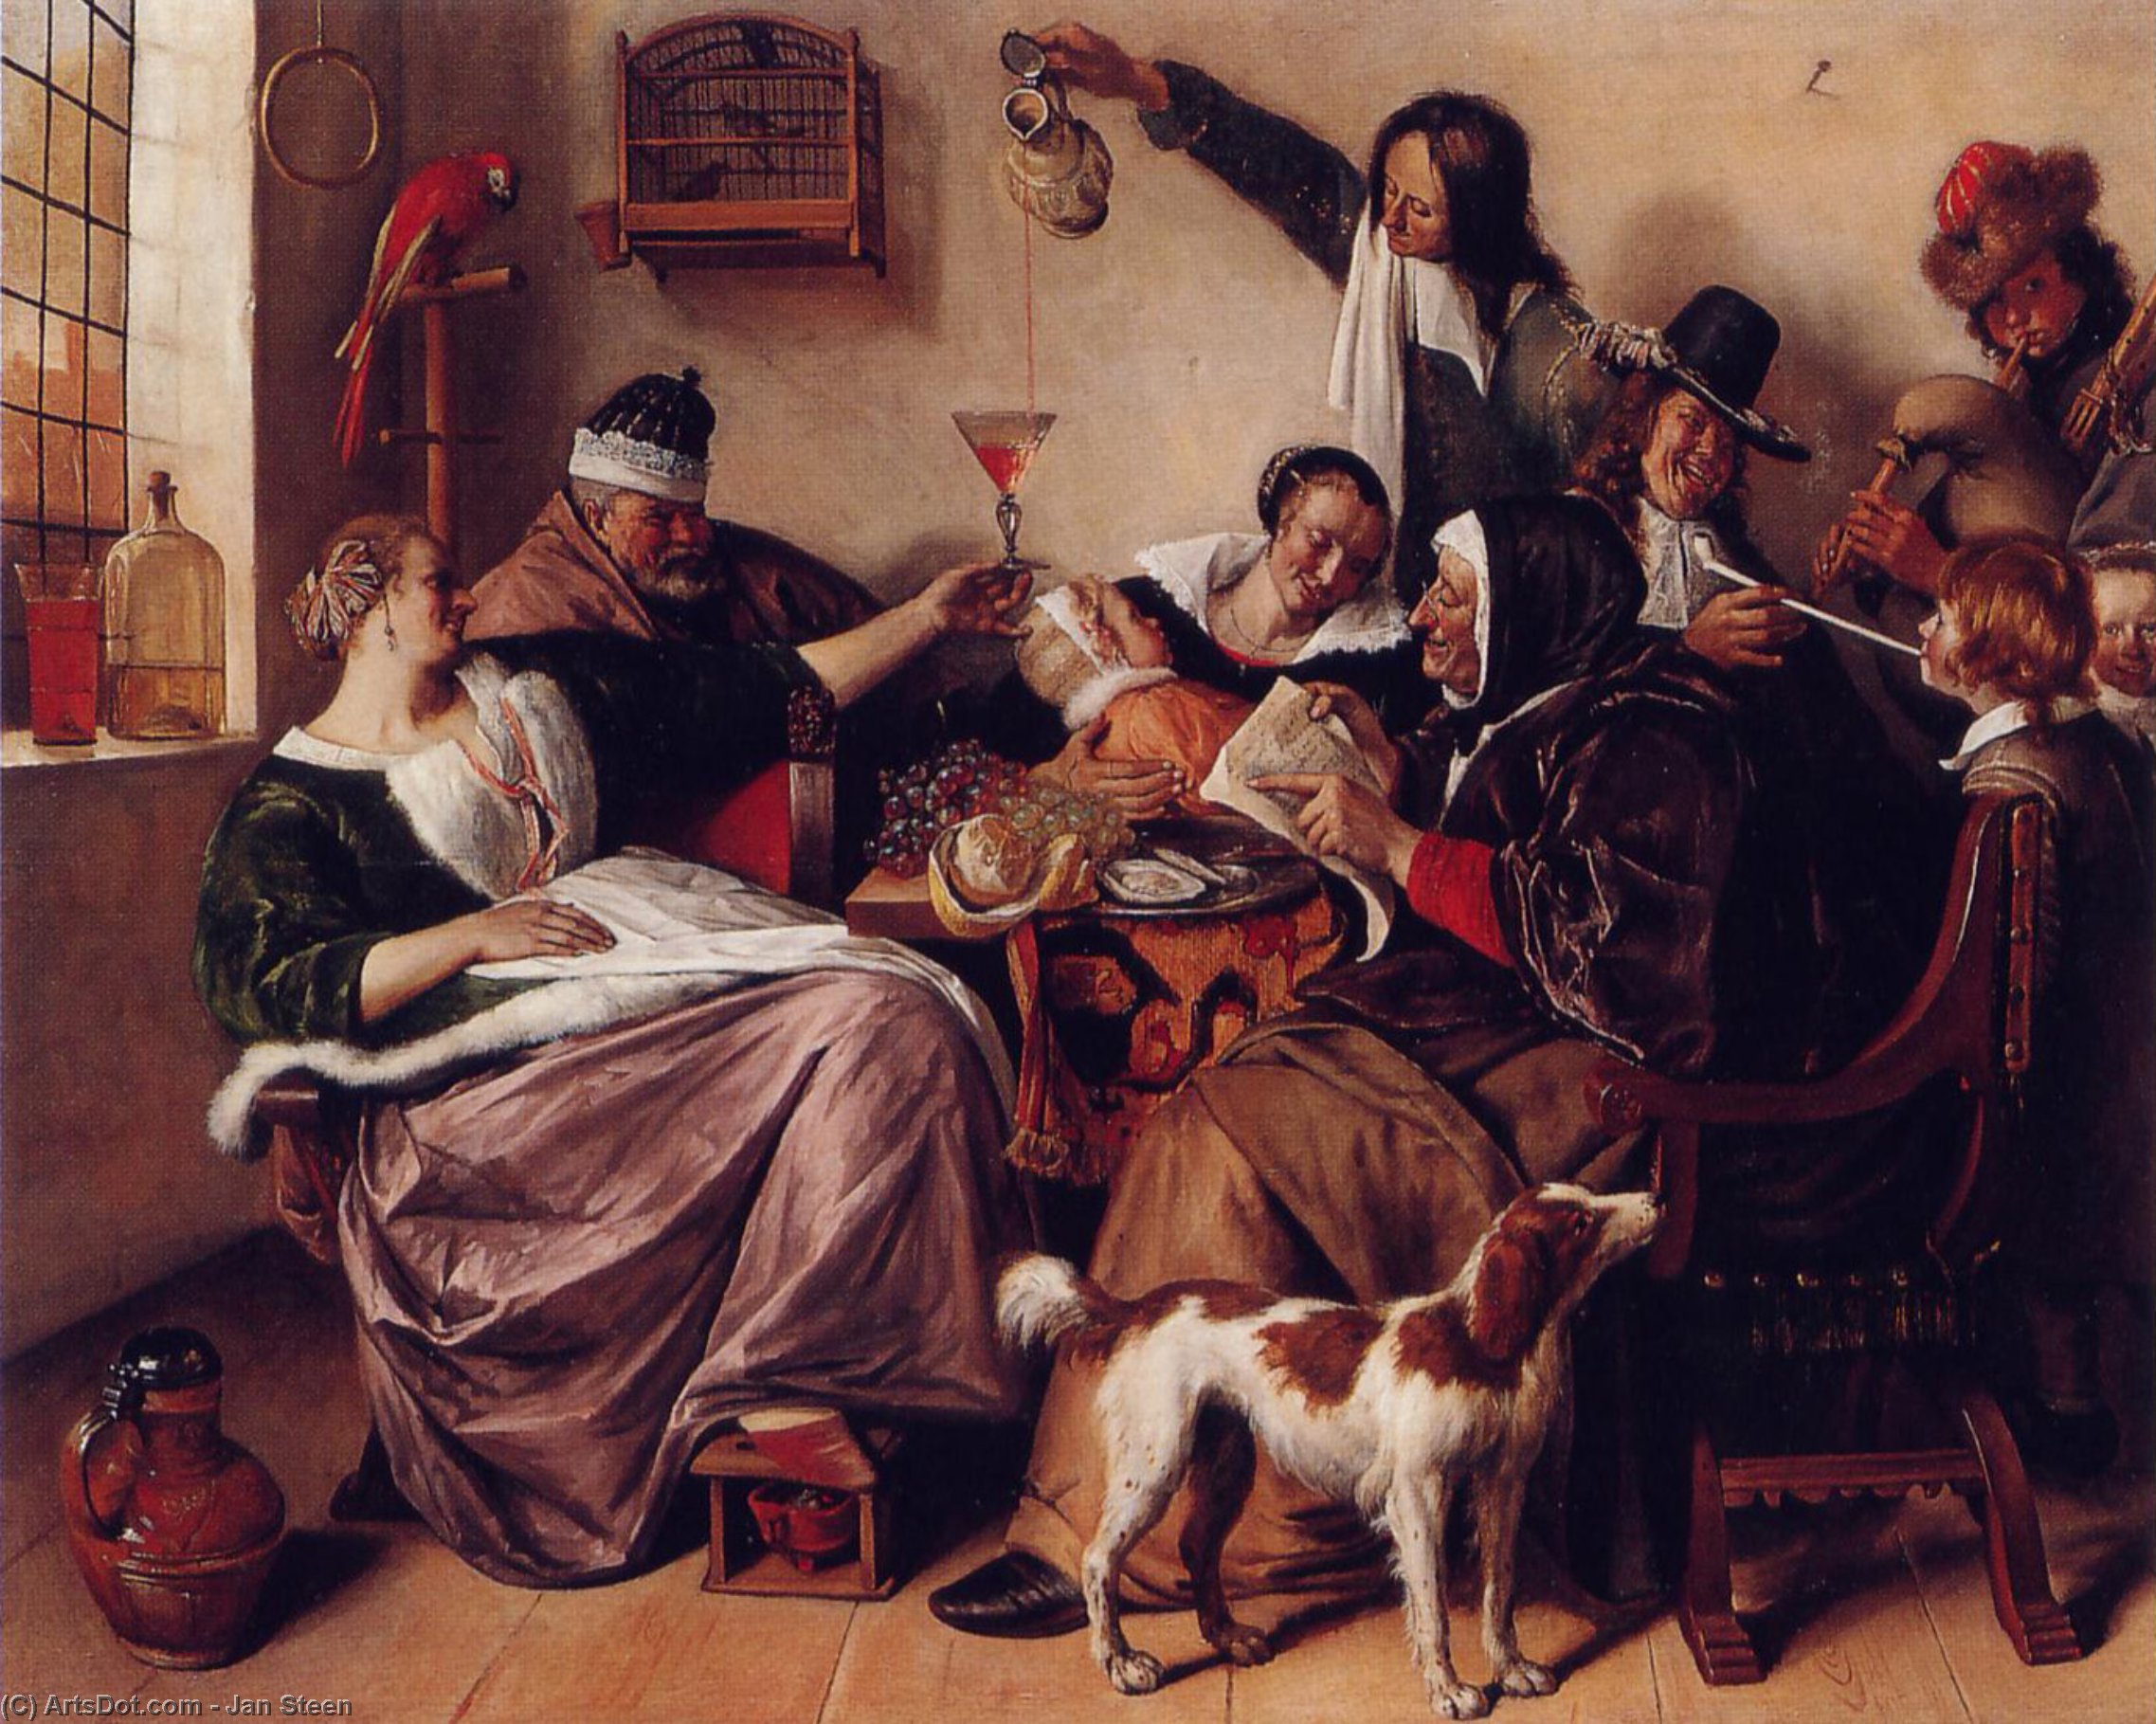 WikiOO.org - Encyclopedia of Fine Arts - Maleri, Artwork Jan Steen - The way you hear it